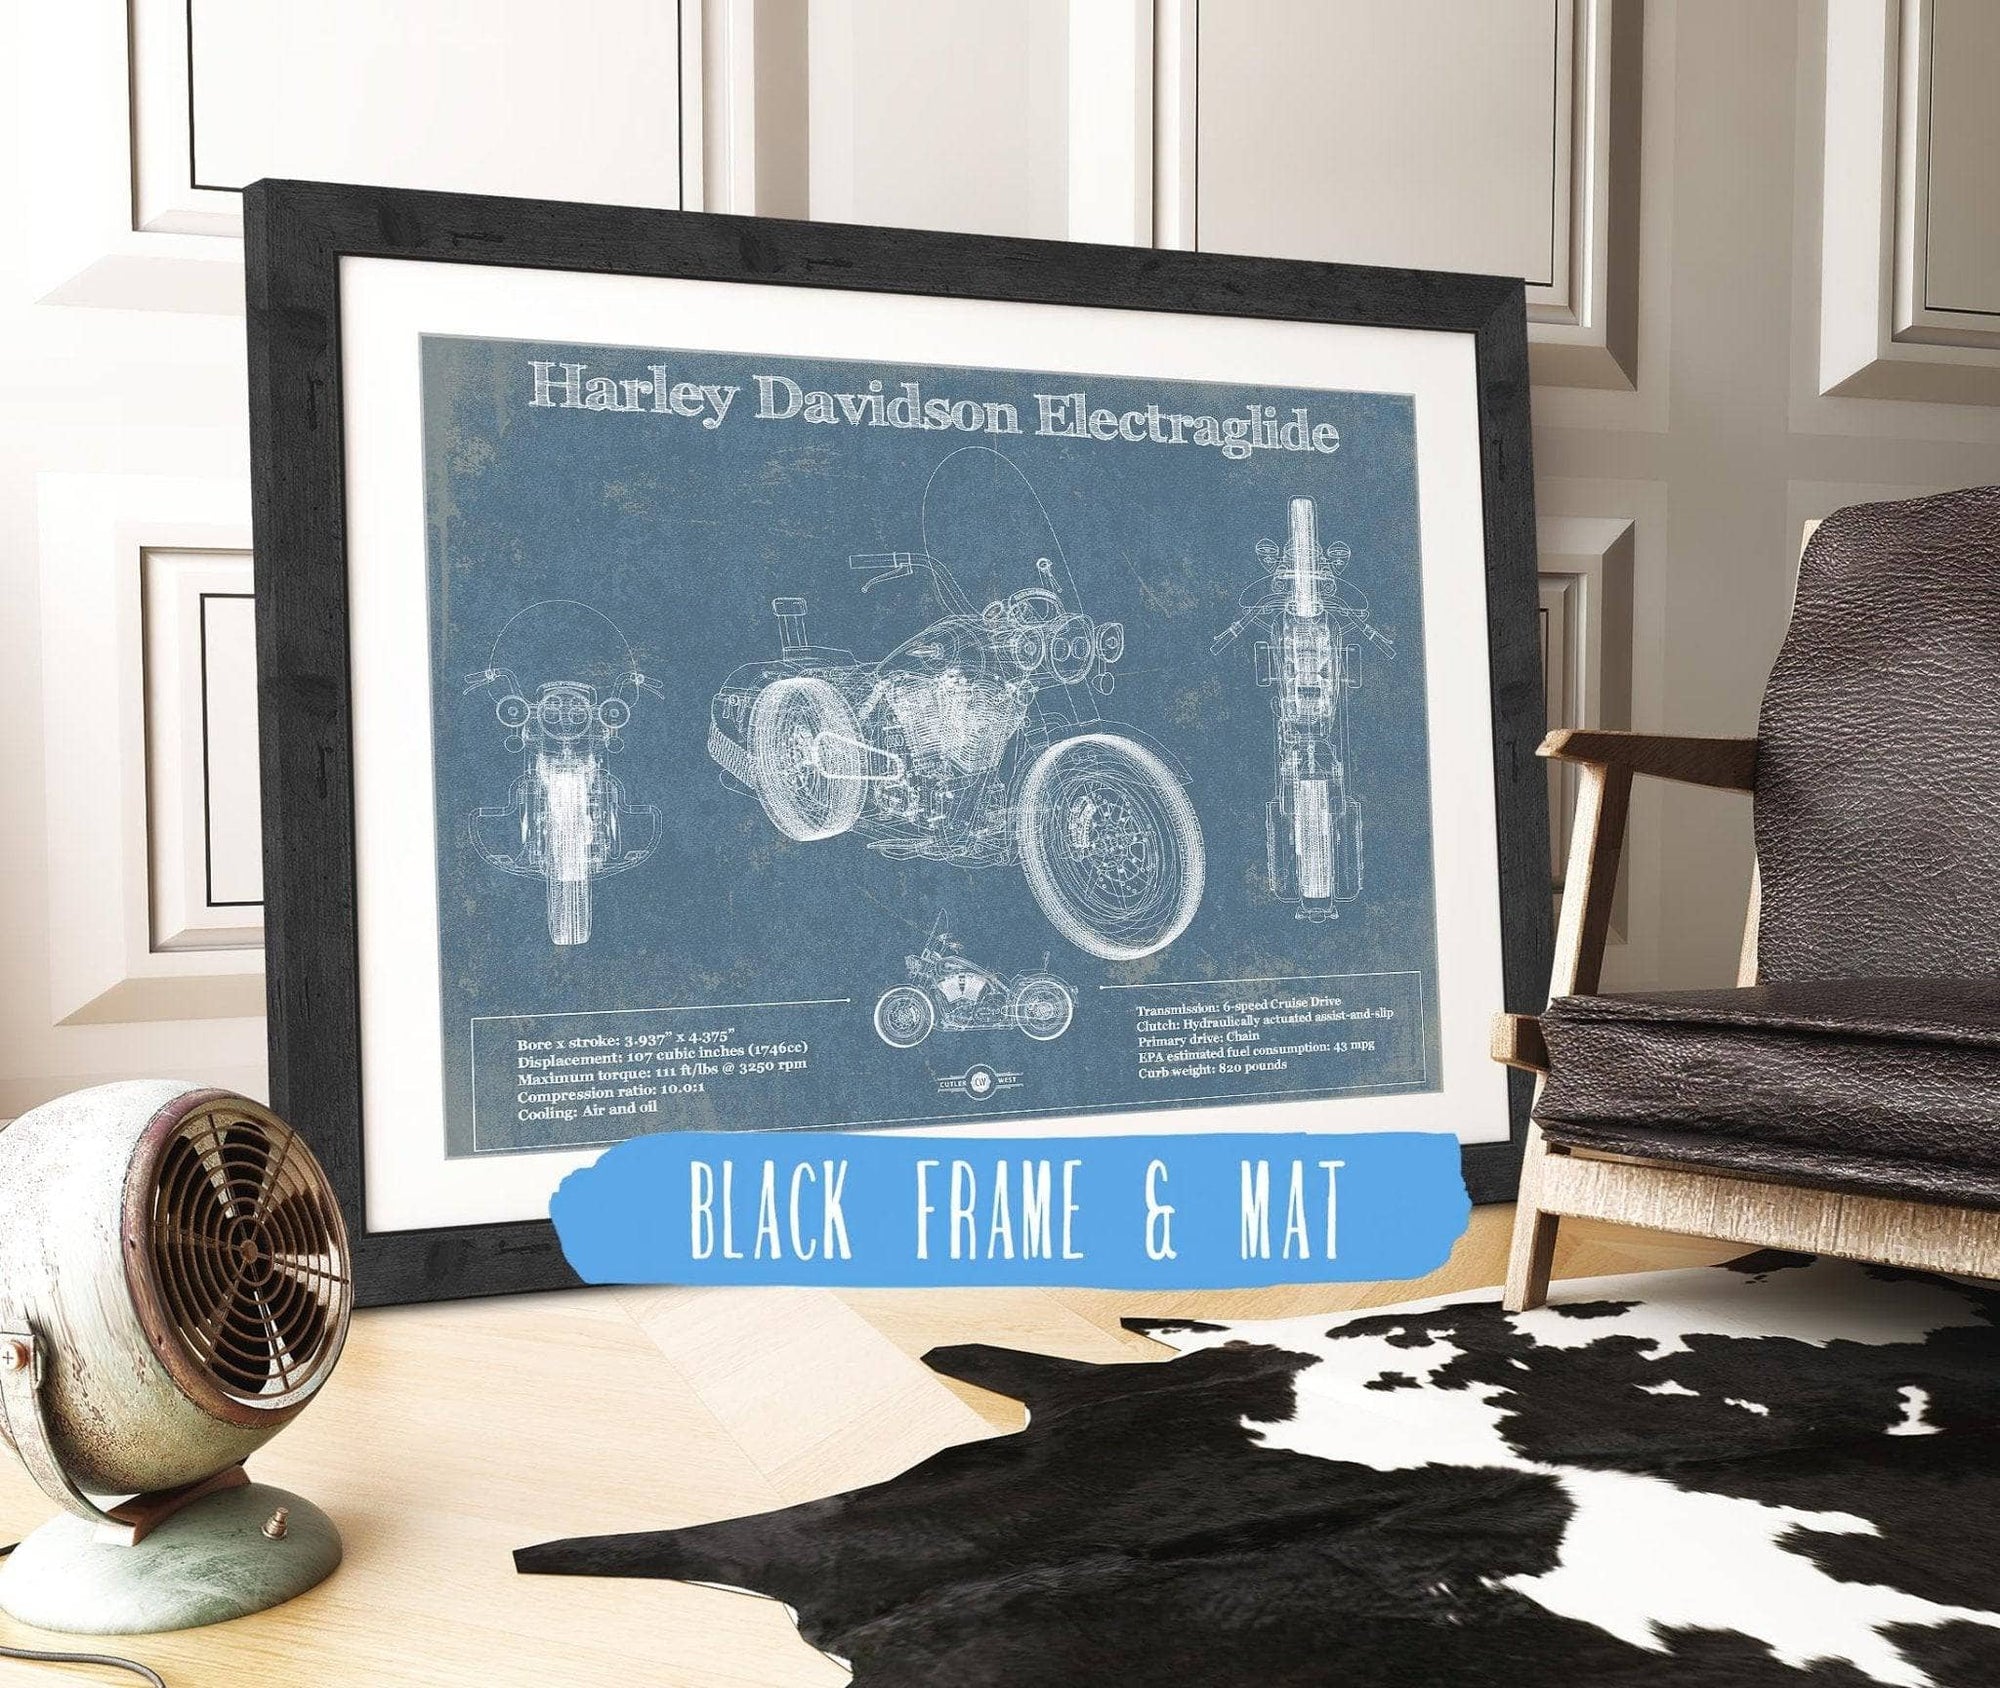 Cutler West 14" x 11" / Black Frame & Mat Harley Davidson ElectraGlide Motorcycle Patent Print 833110125_17542